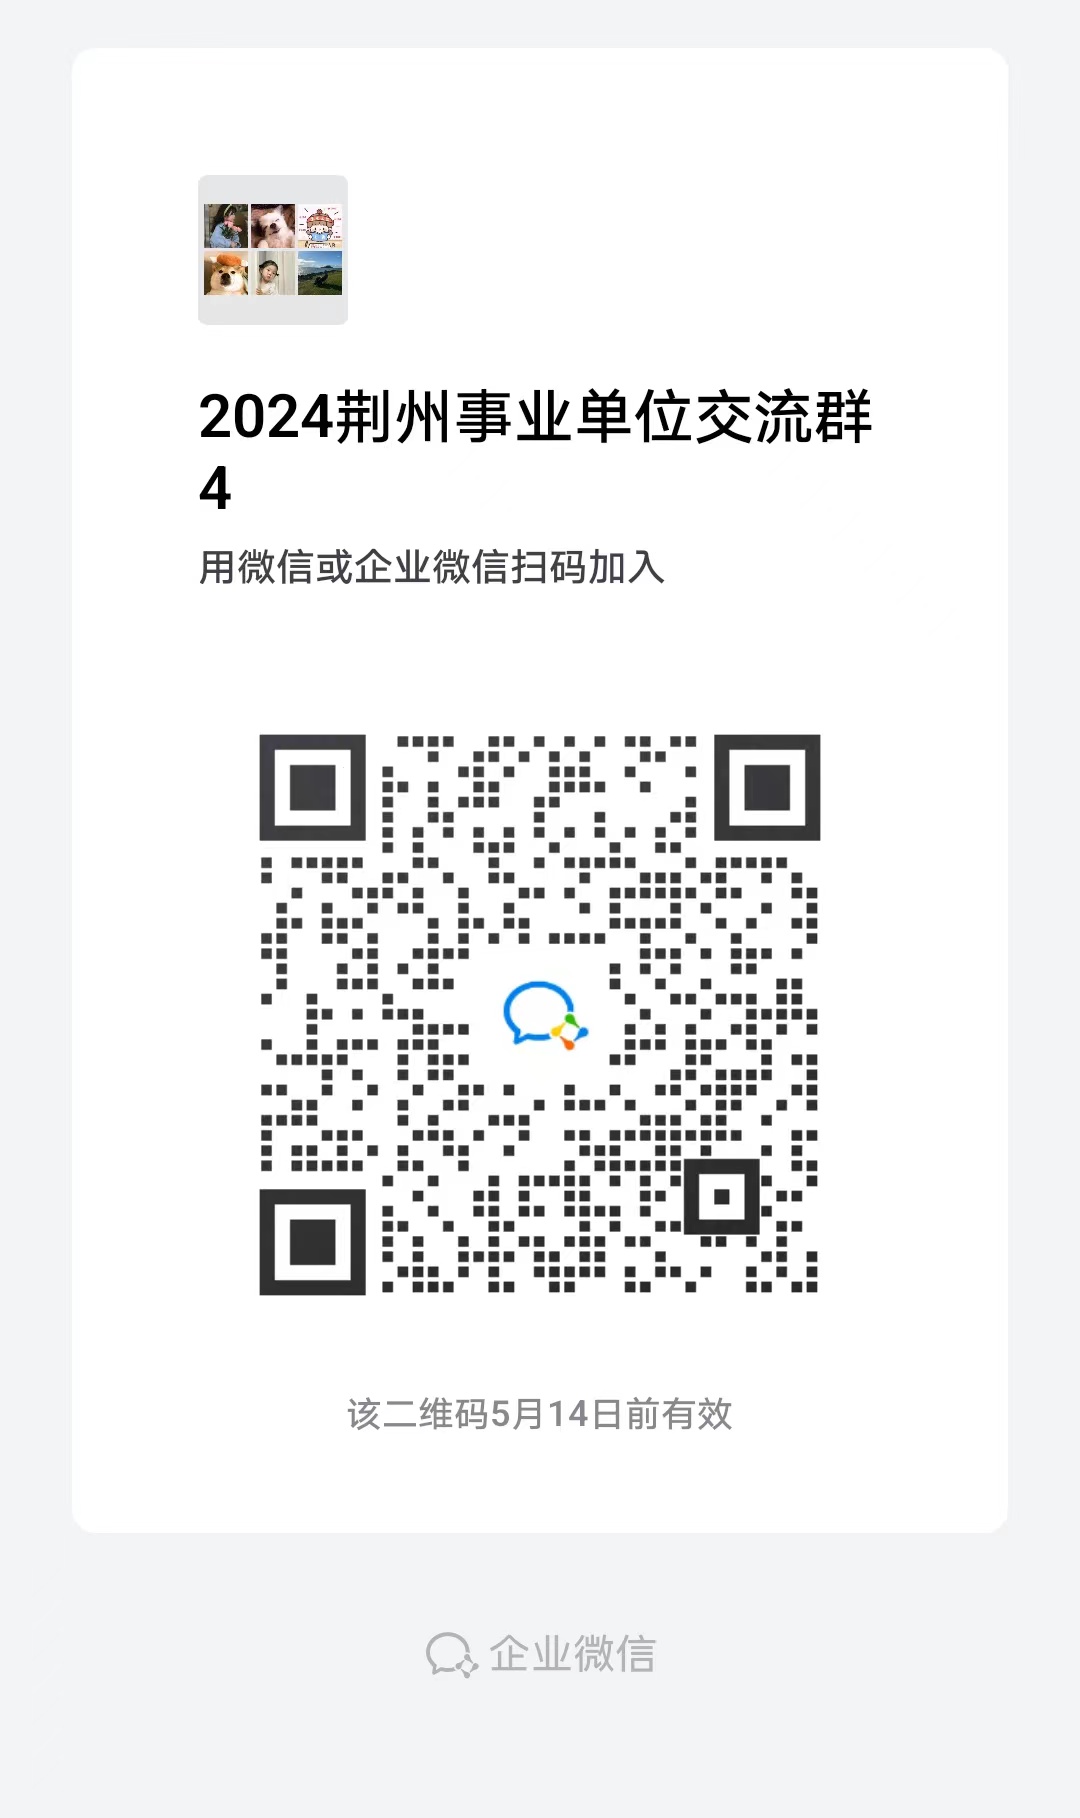 2024年荆州江陵县事业单位统一公开招聘工作人员资格复审公告